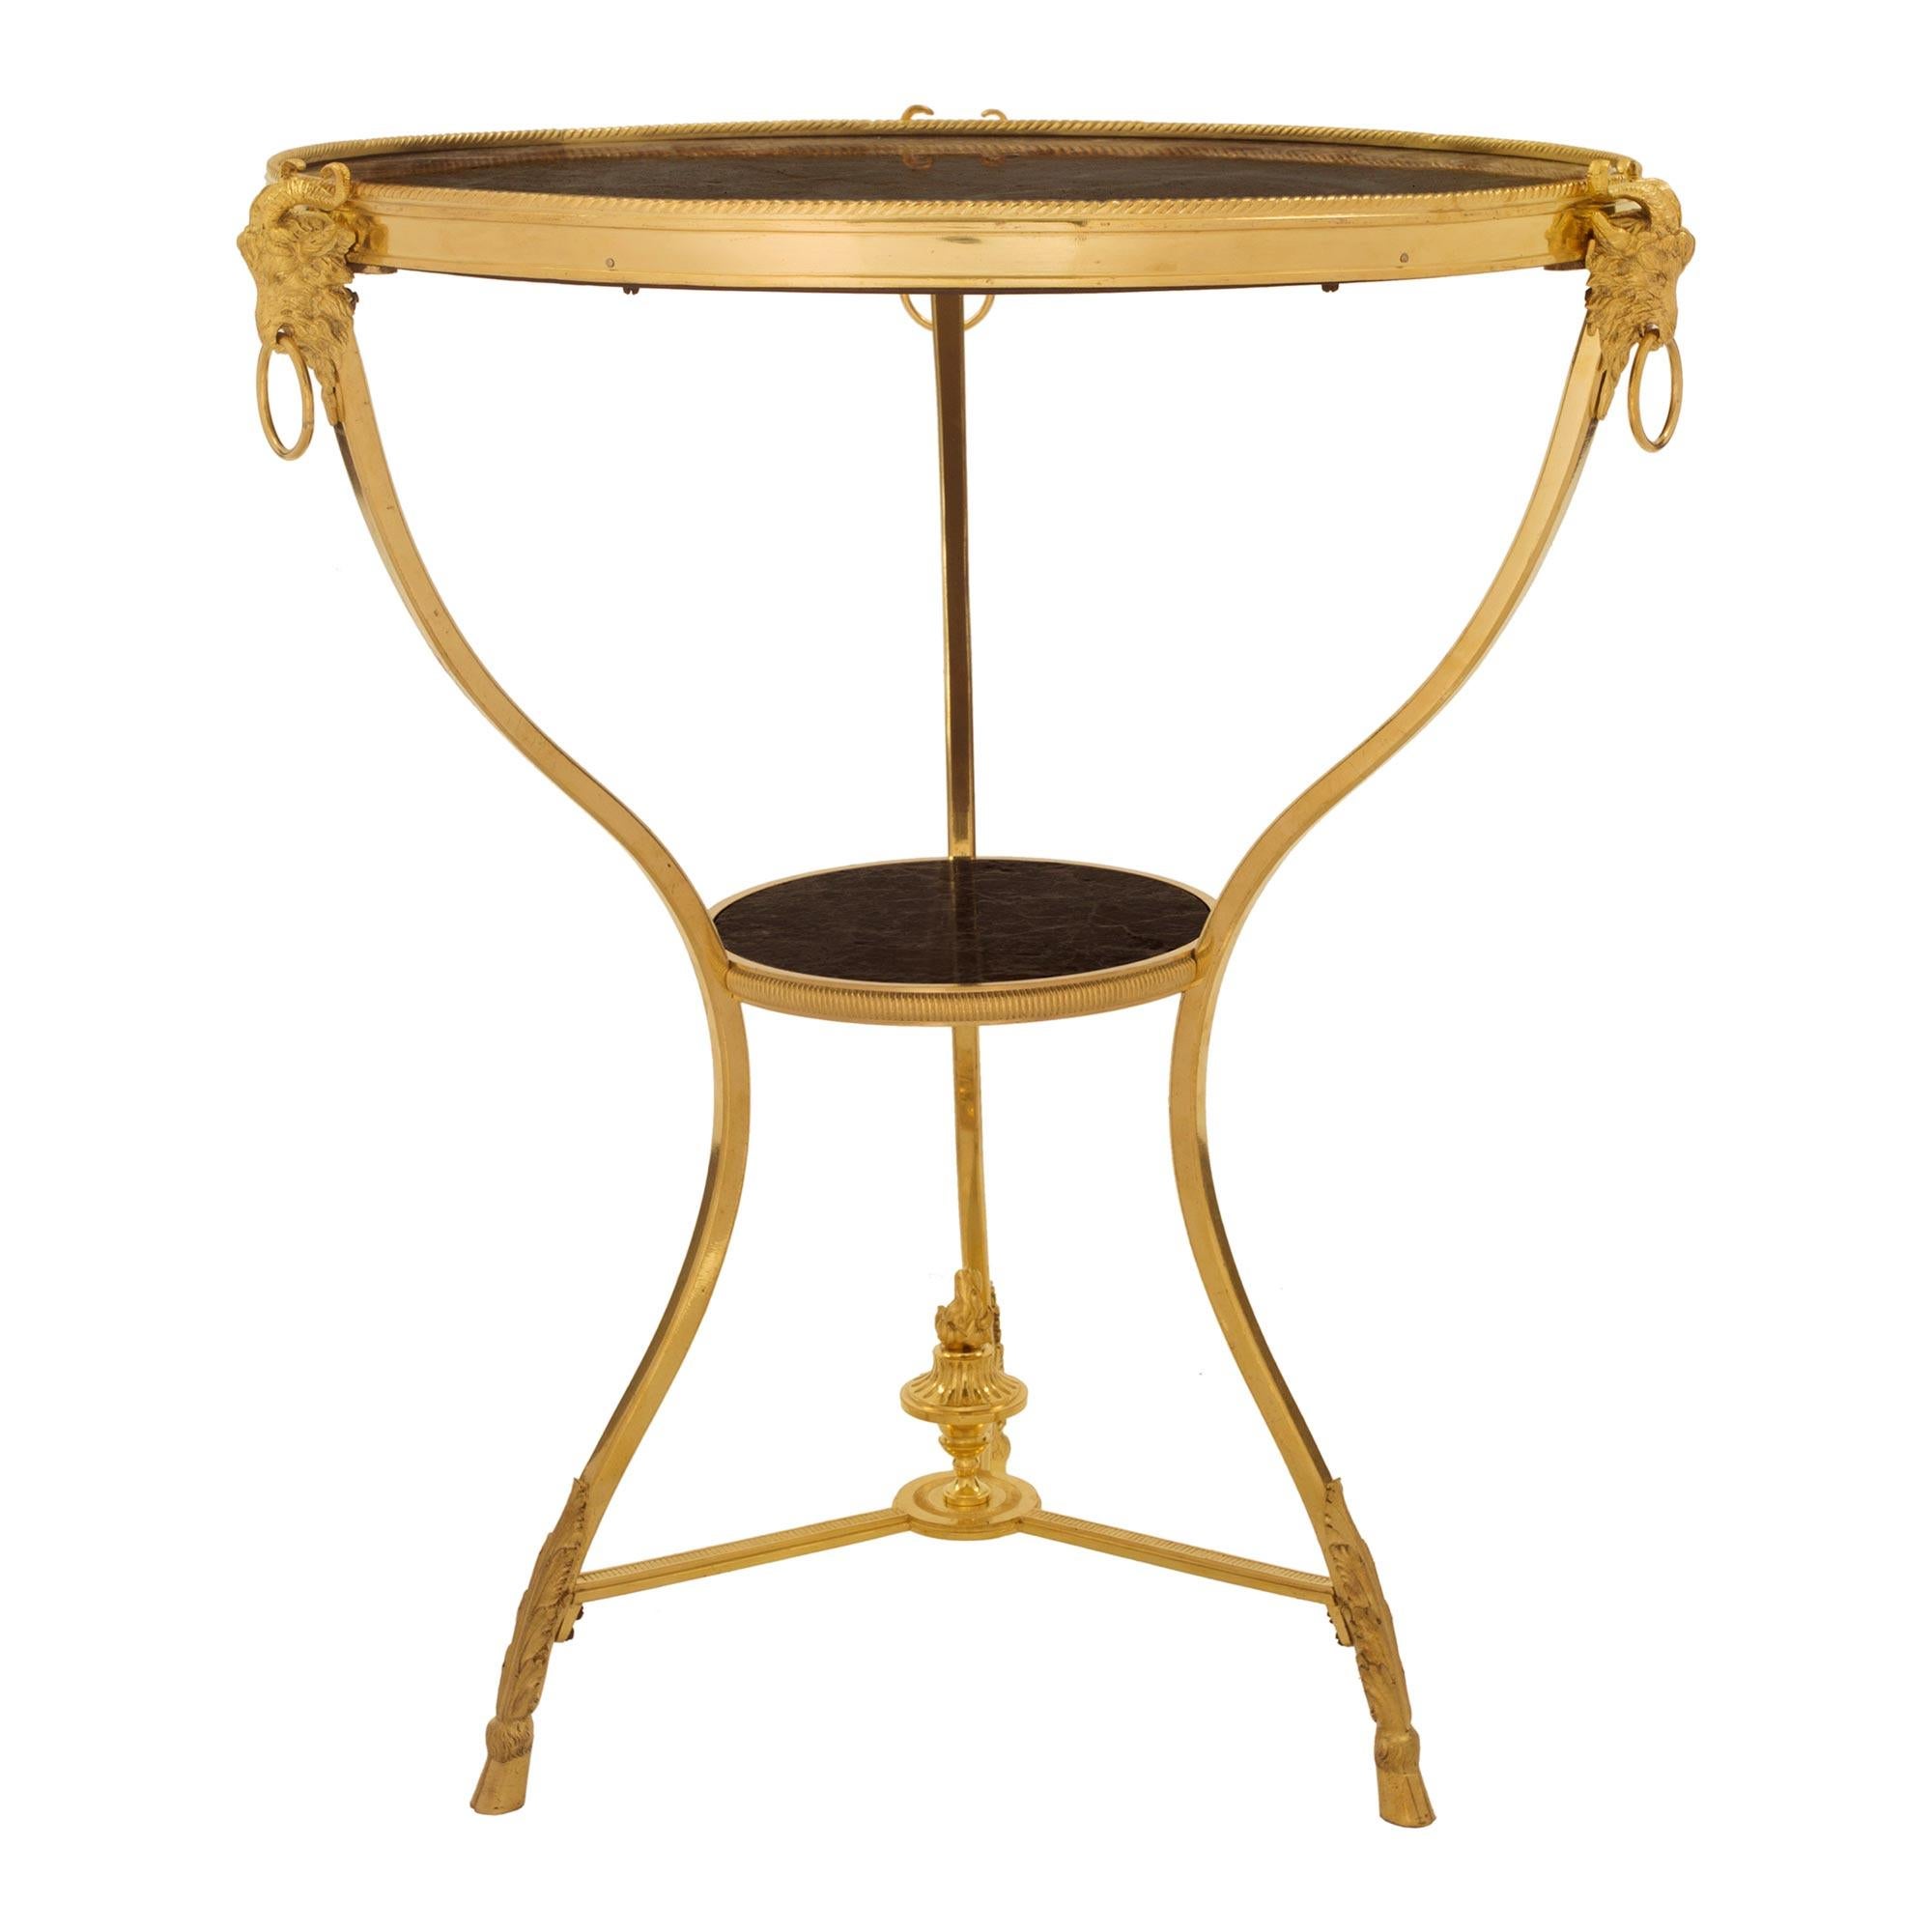 Ein eleganter französischer Beistelltisch aus dem 19. Jahrhundert aus Louis XVI Ormolu und Vert de Patricia Marmor Guéridon. Der Tisch steht auf feinen Huffüßen unter reich ziselierten Akanthusblättern in feiner Satinierung und Brünierung. Die